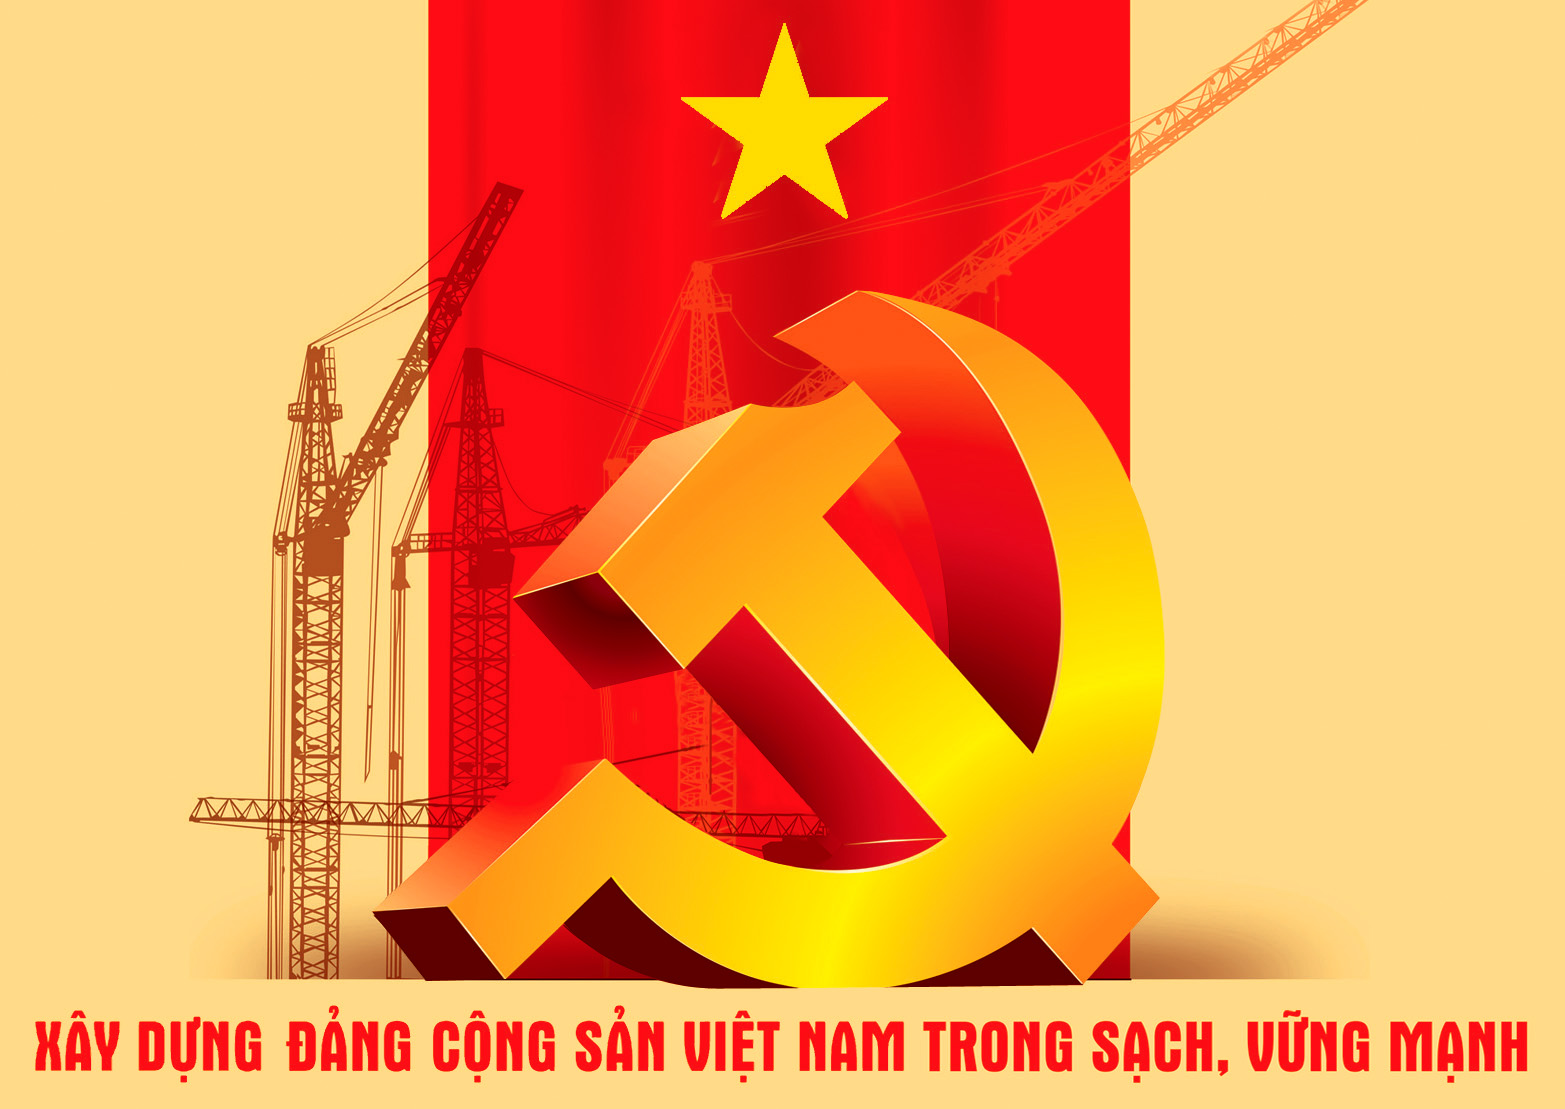 Đảng cầm quyền luôn là tập thể nâng cao đóng góp của mình để đáp ứng nhu cầu và quyền lợi của nhân dân. Chúng ta thấy được sự phát triển kinh tế, văn hoá và xã hội ngày càng được nâng cao. Trong những năm qua, Đảng cầm quyền luôn đứng vững trước mọi đề challenges,và phấn đấu cải thiện các lĩnh vực khác nhau. Sự kiện này hứa hẹn một tương lai rực rỡ cho đất nước và nhân dân Việt Nam.